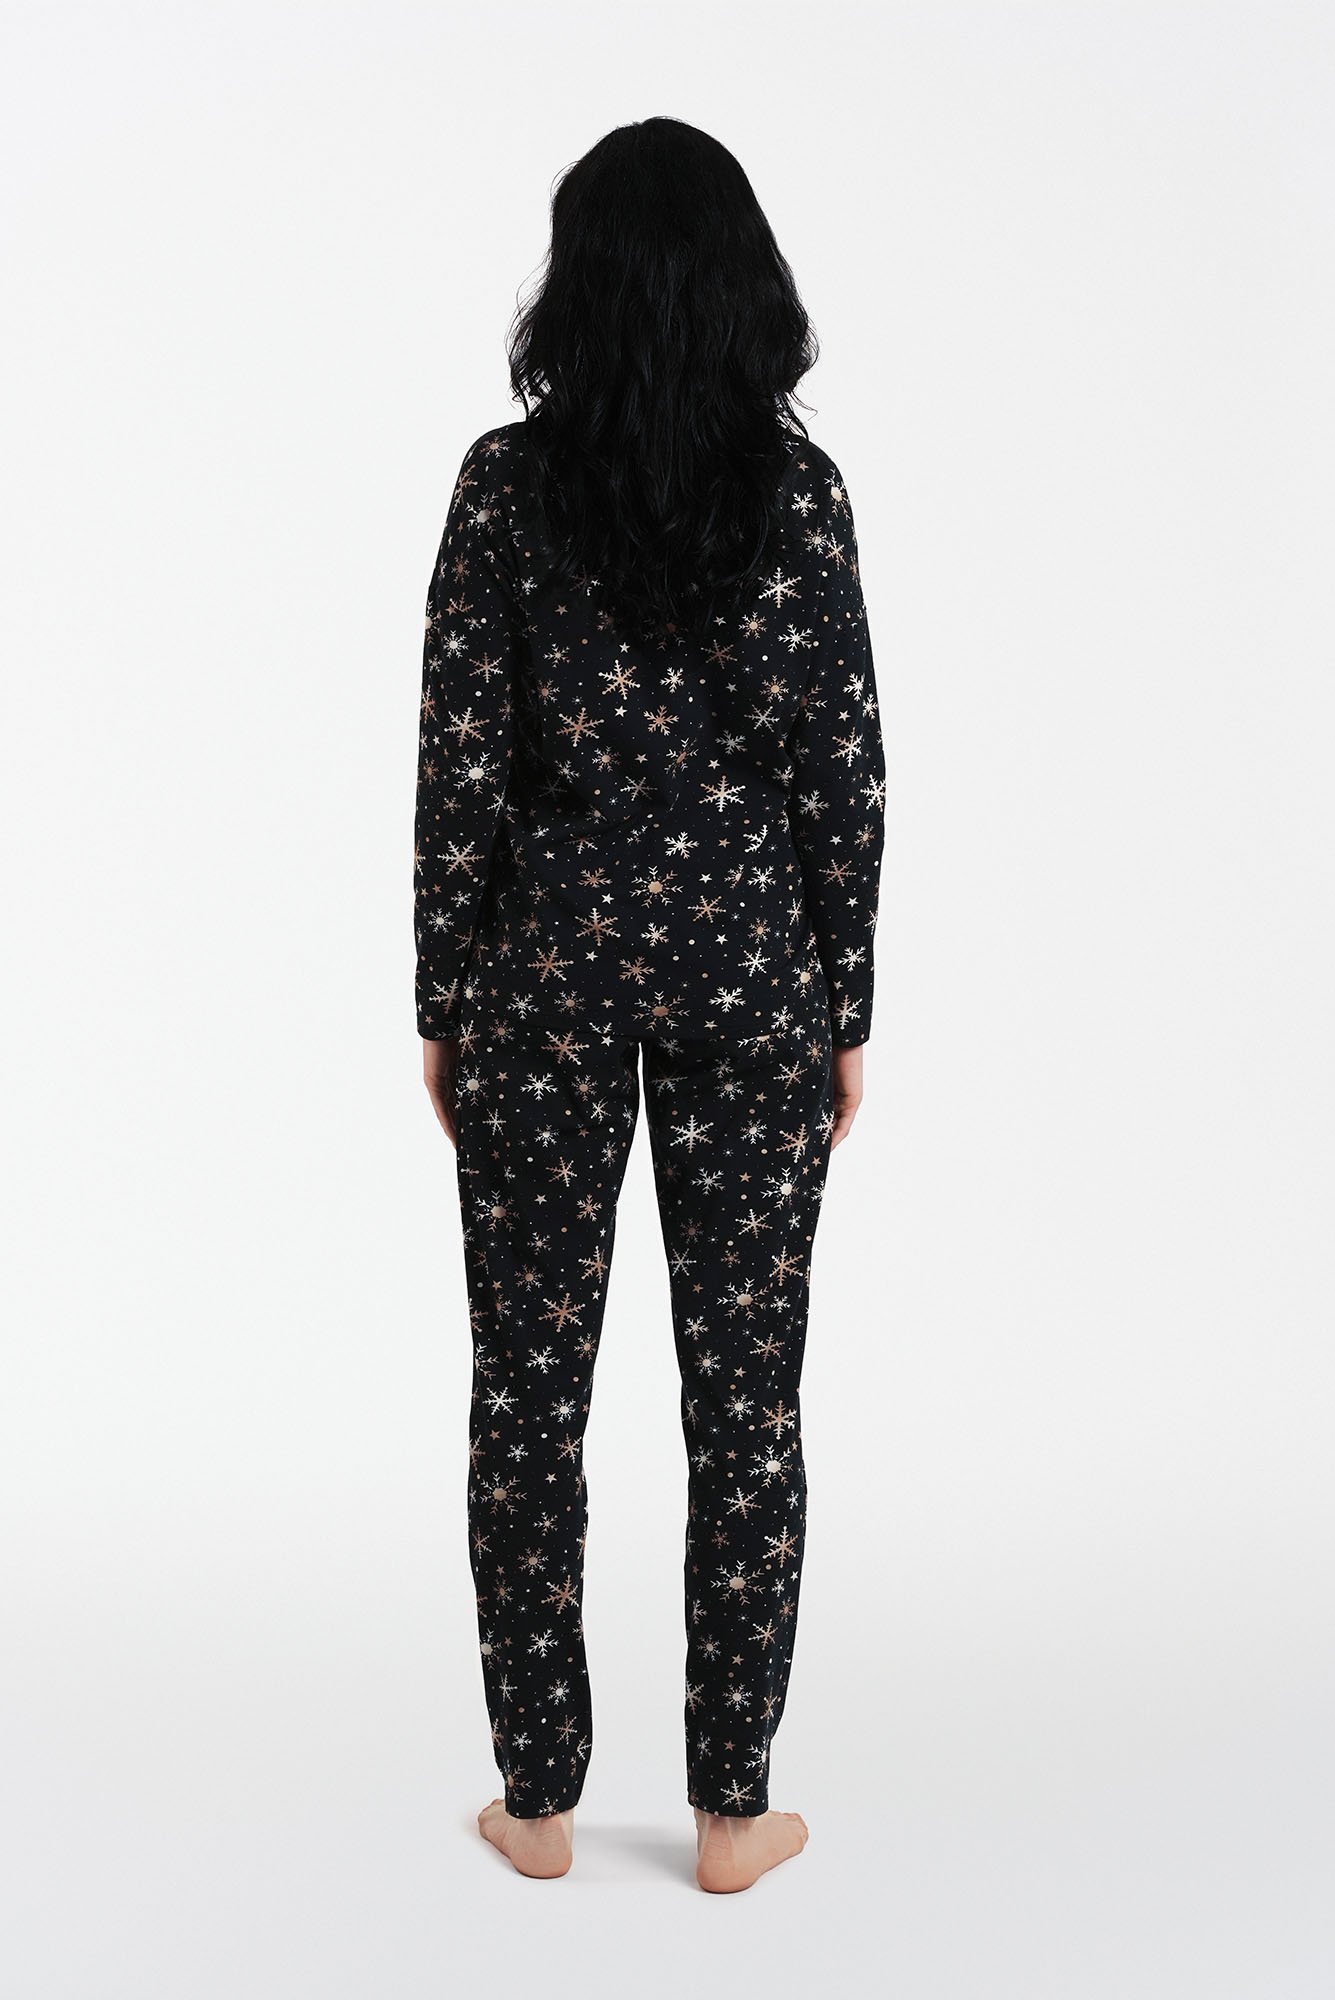 Women's pyjamas Laponia, long sleeves, long legs - print